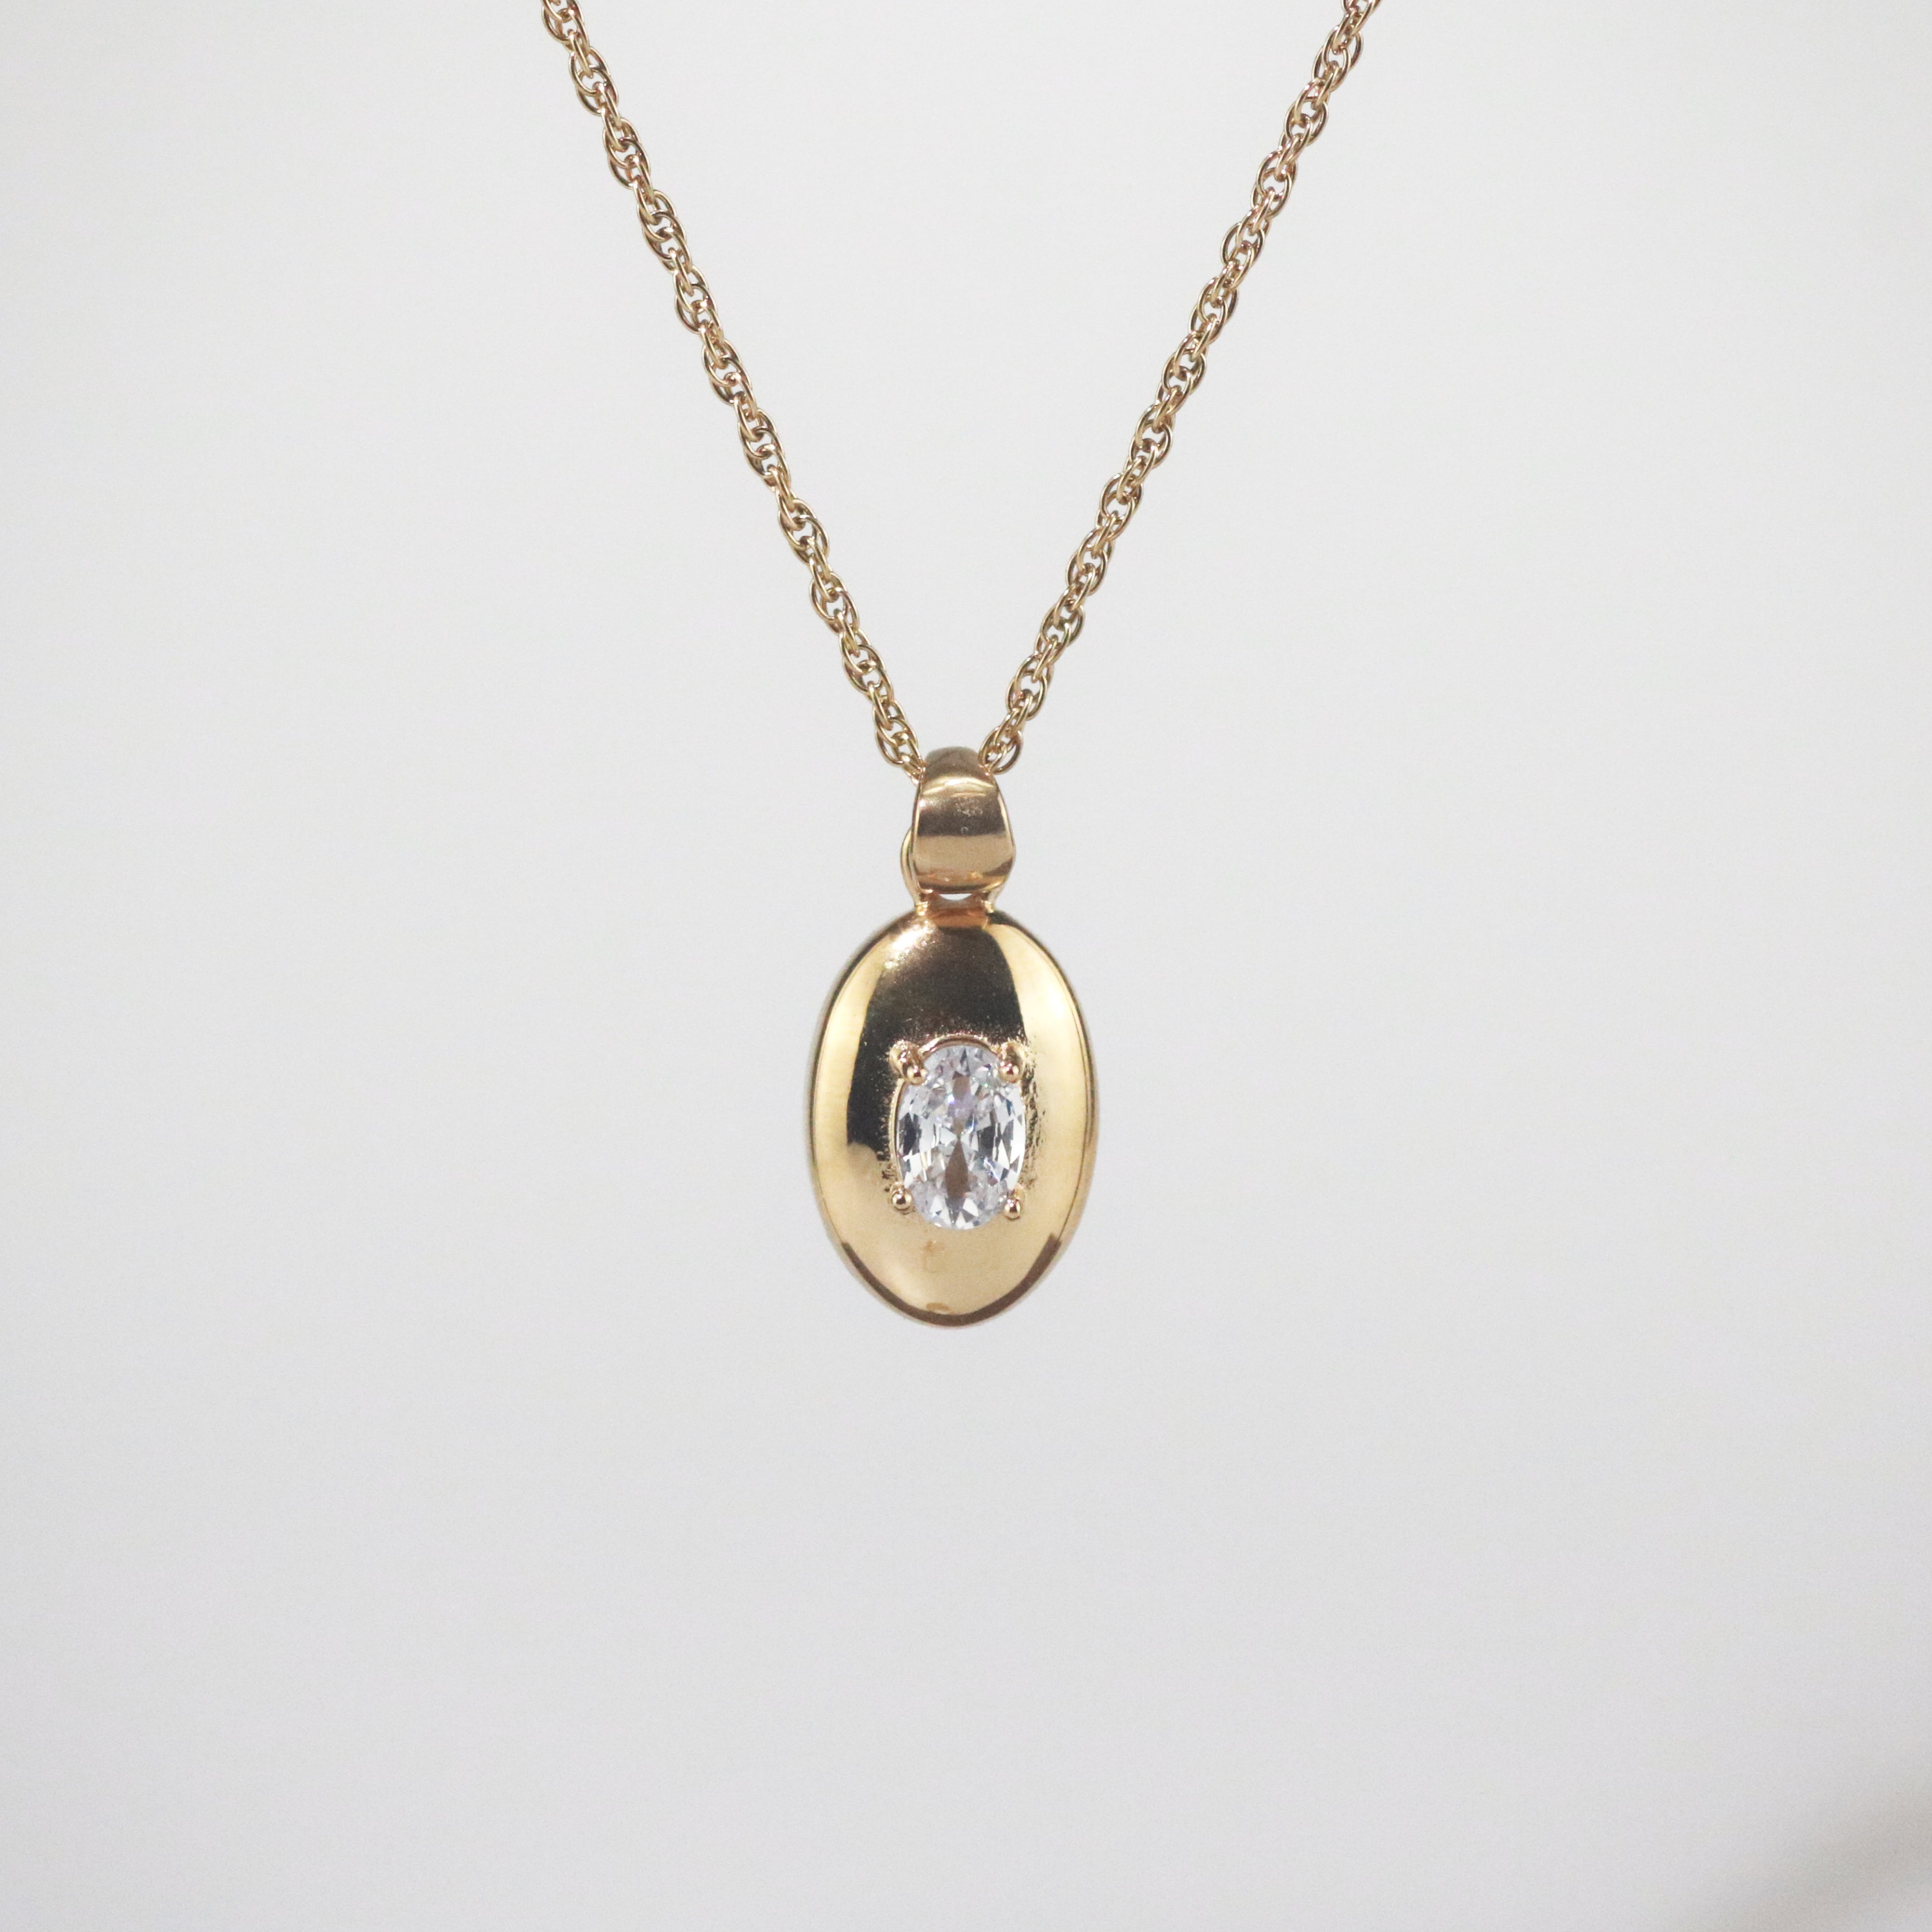 Meideya Jewelry Gold Oval Pendant Necklace, Waterproof jewelry